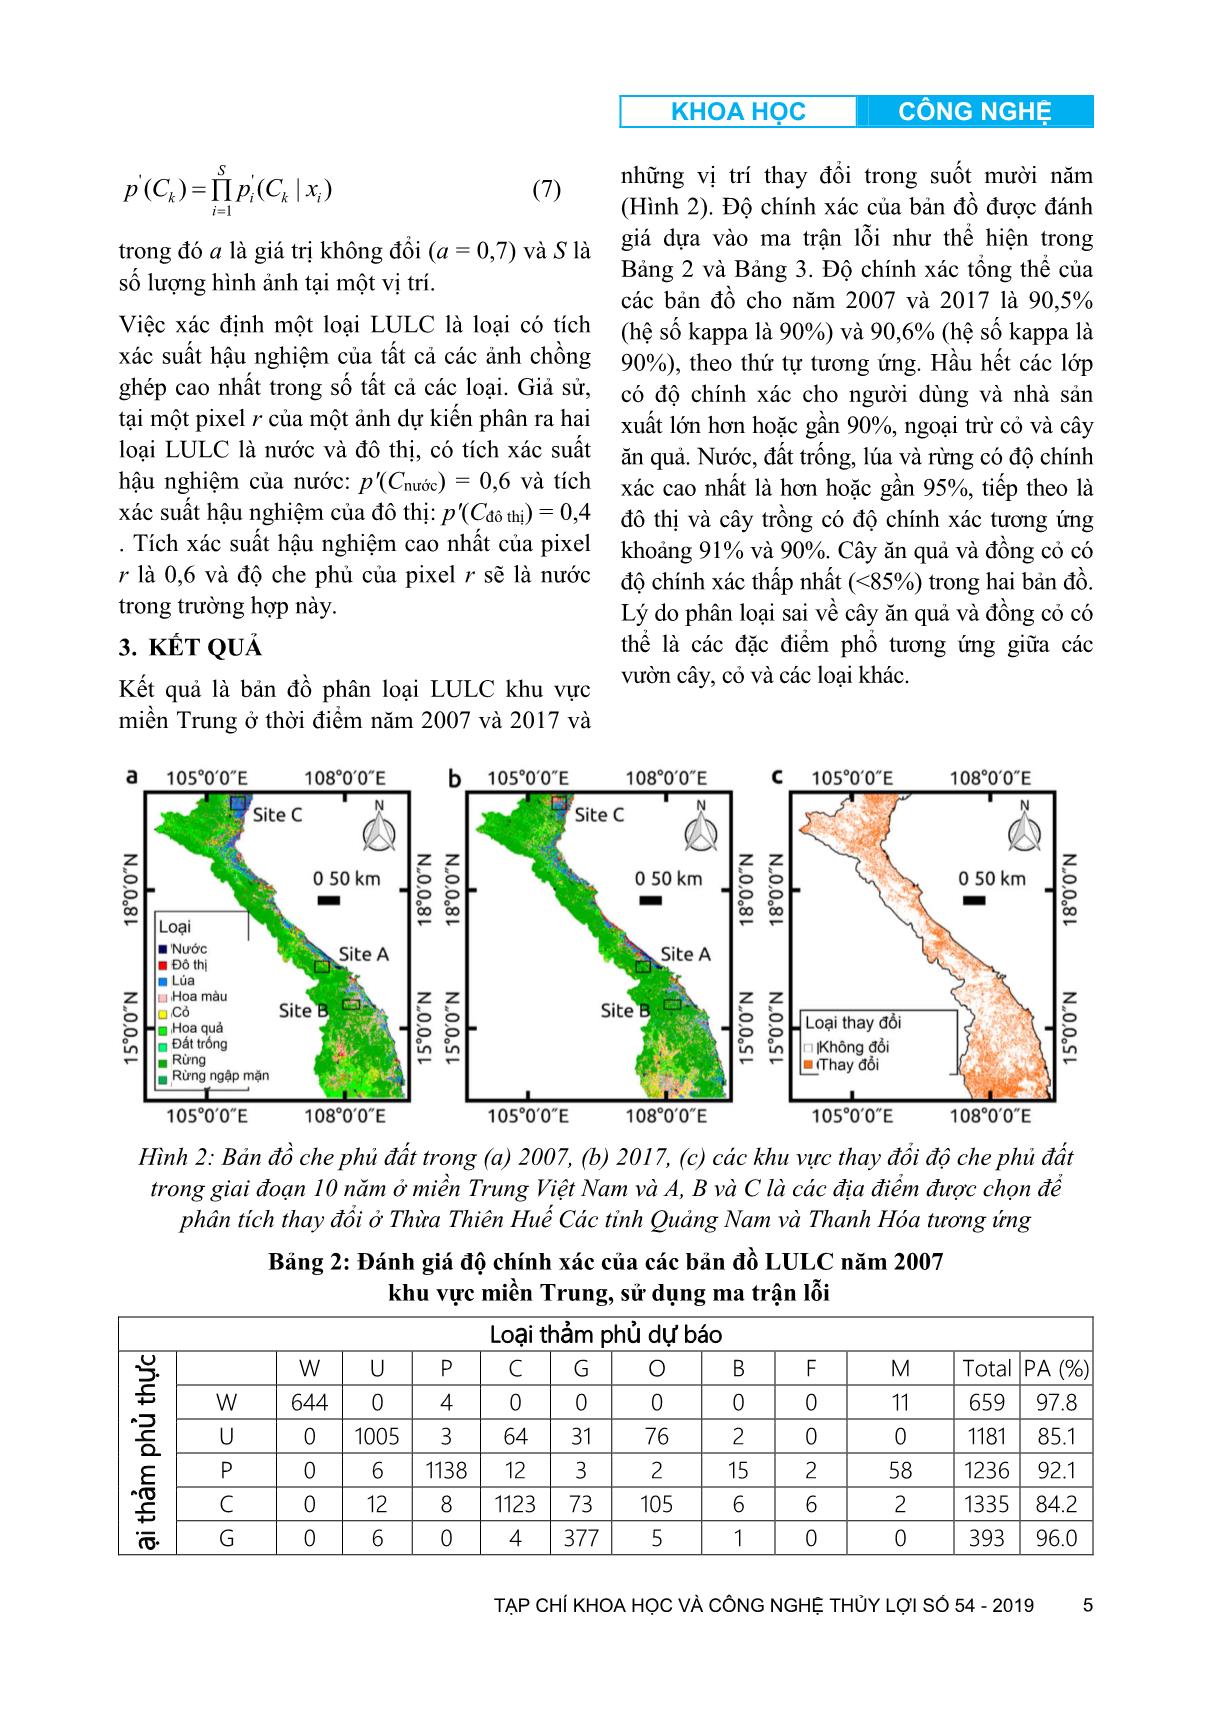 Đánh giá biến động thảm phủ và sử dụng đất khu vực miền Trung dựa vào thuật toán ước tính mật độ hạt nhân trang 5